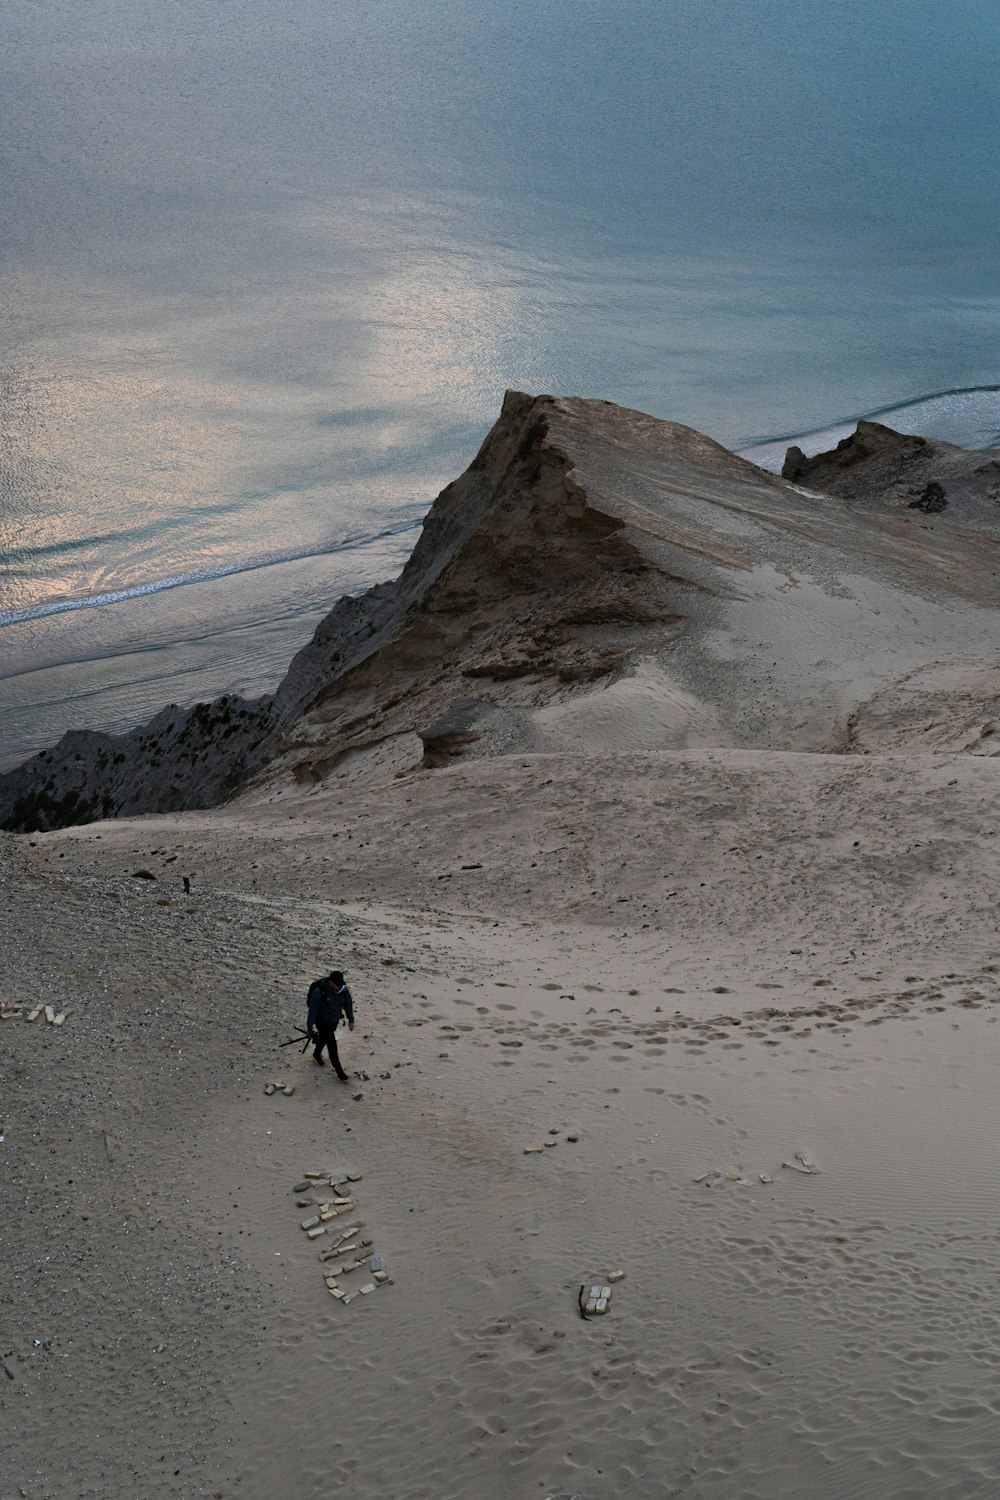 a man walking across a sandy beach next to the ocean